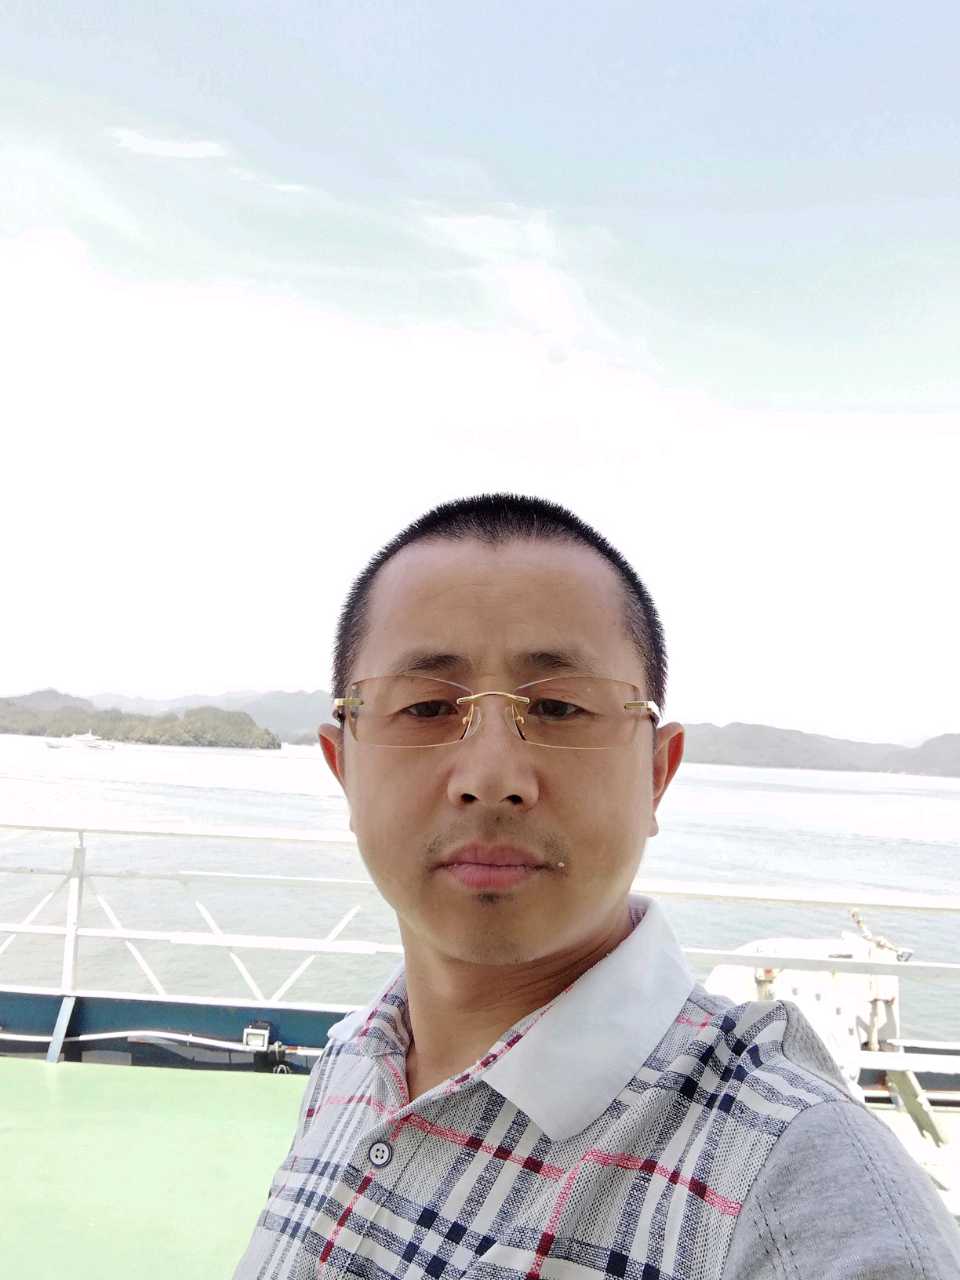 卢龙县,北戴河,海港惠达马桶安装师师傅